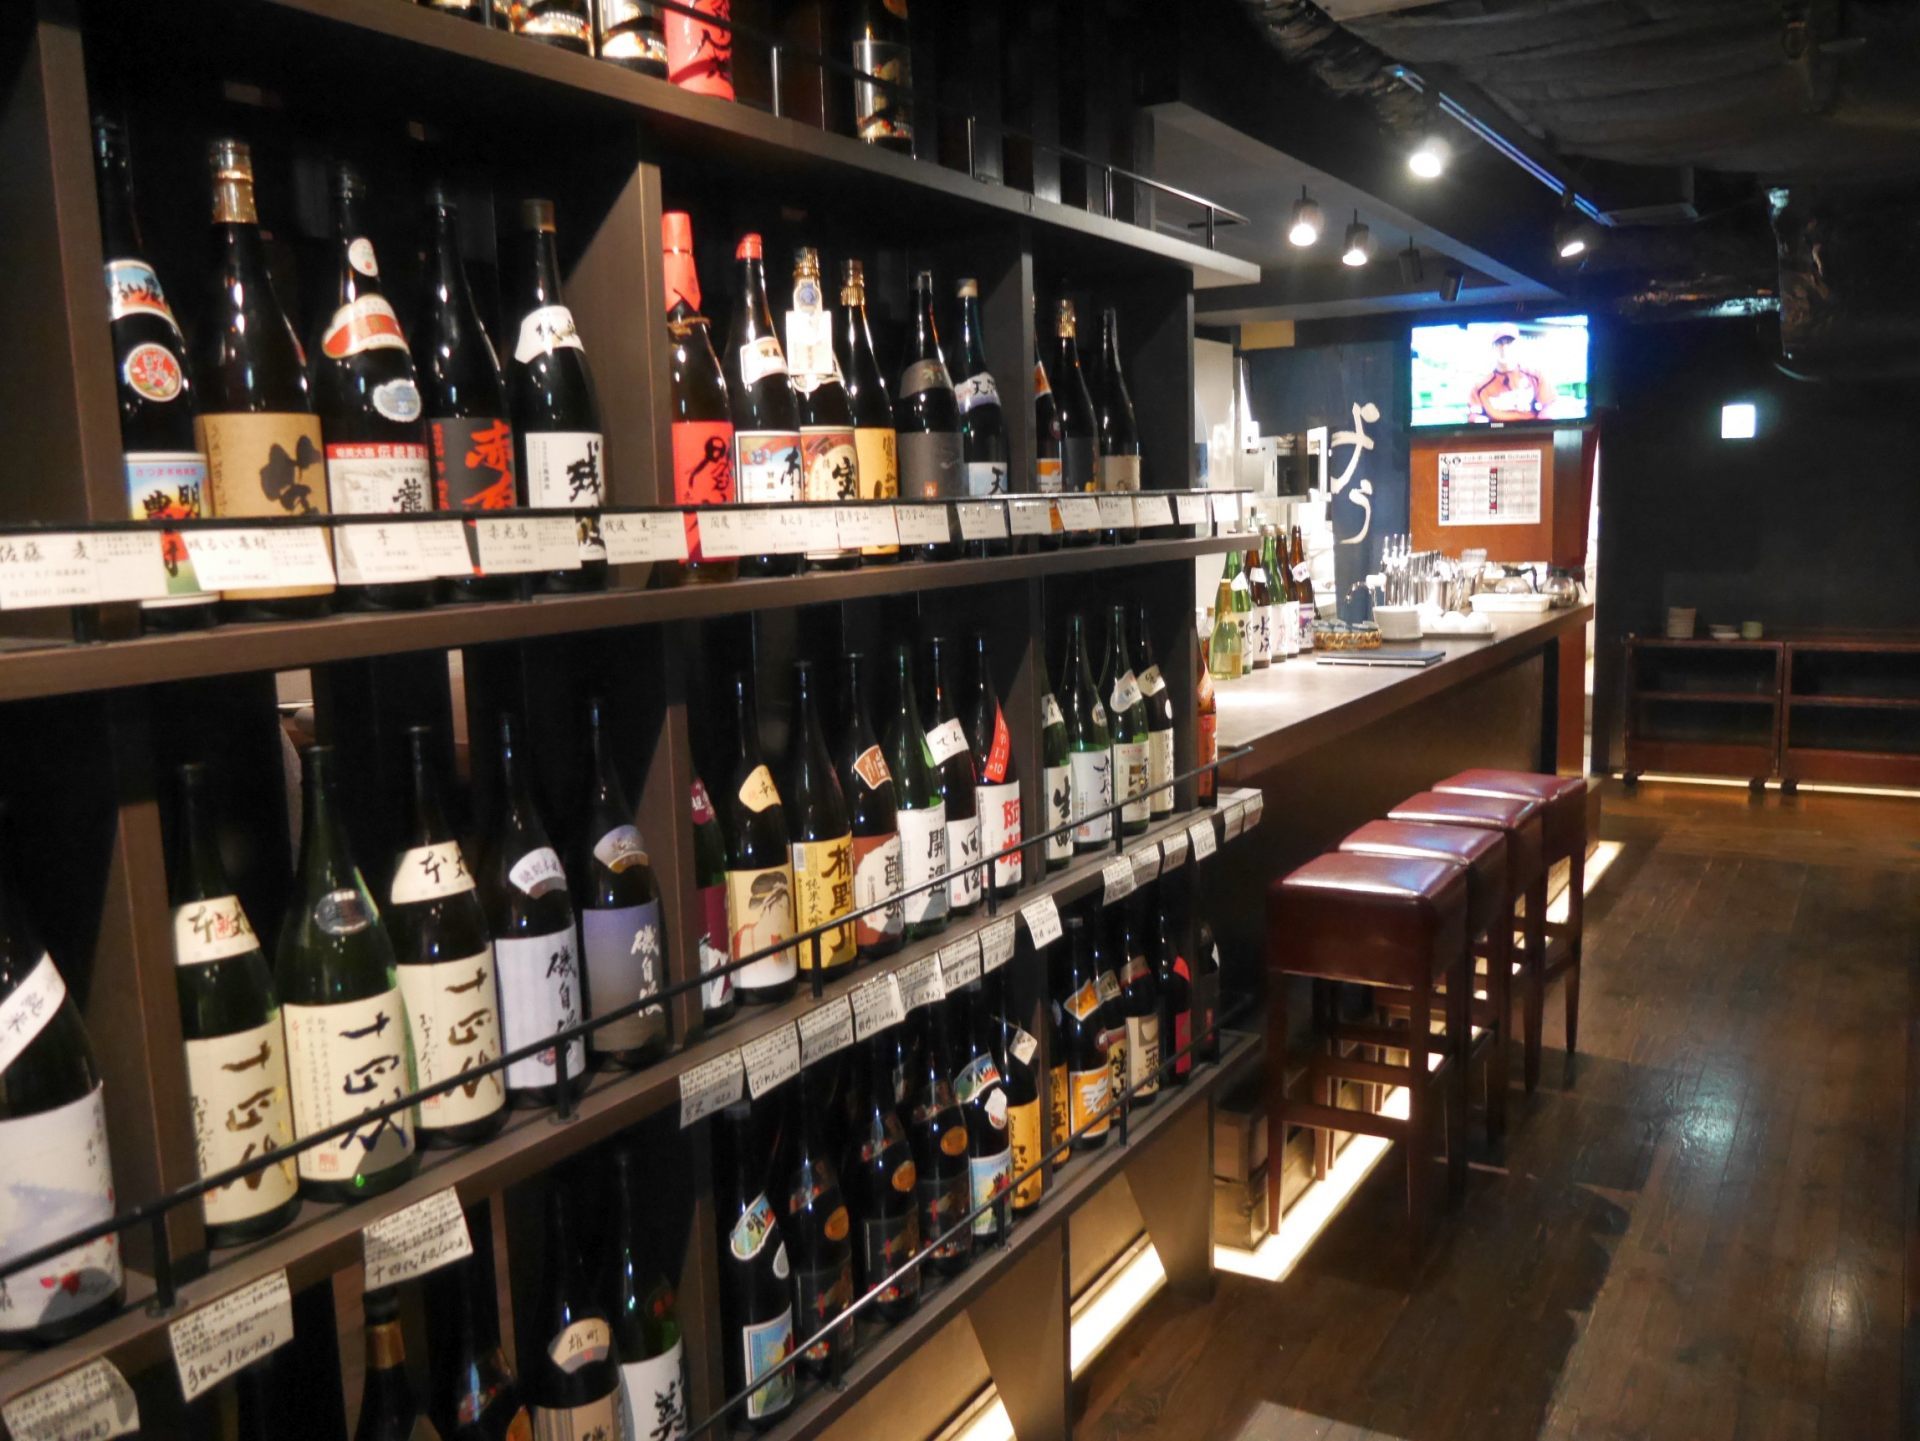 到提供 喝到饱 服务的居酒屋 体验遍尝日本美酒的乐趣 好运日本行